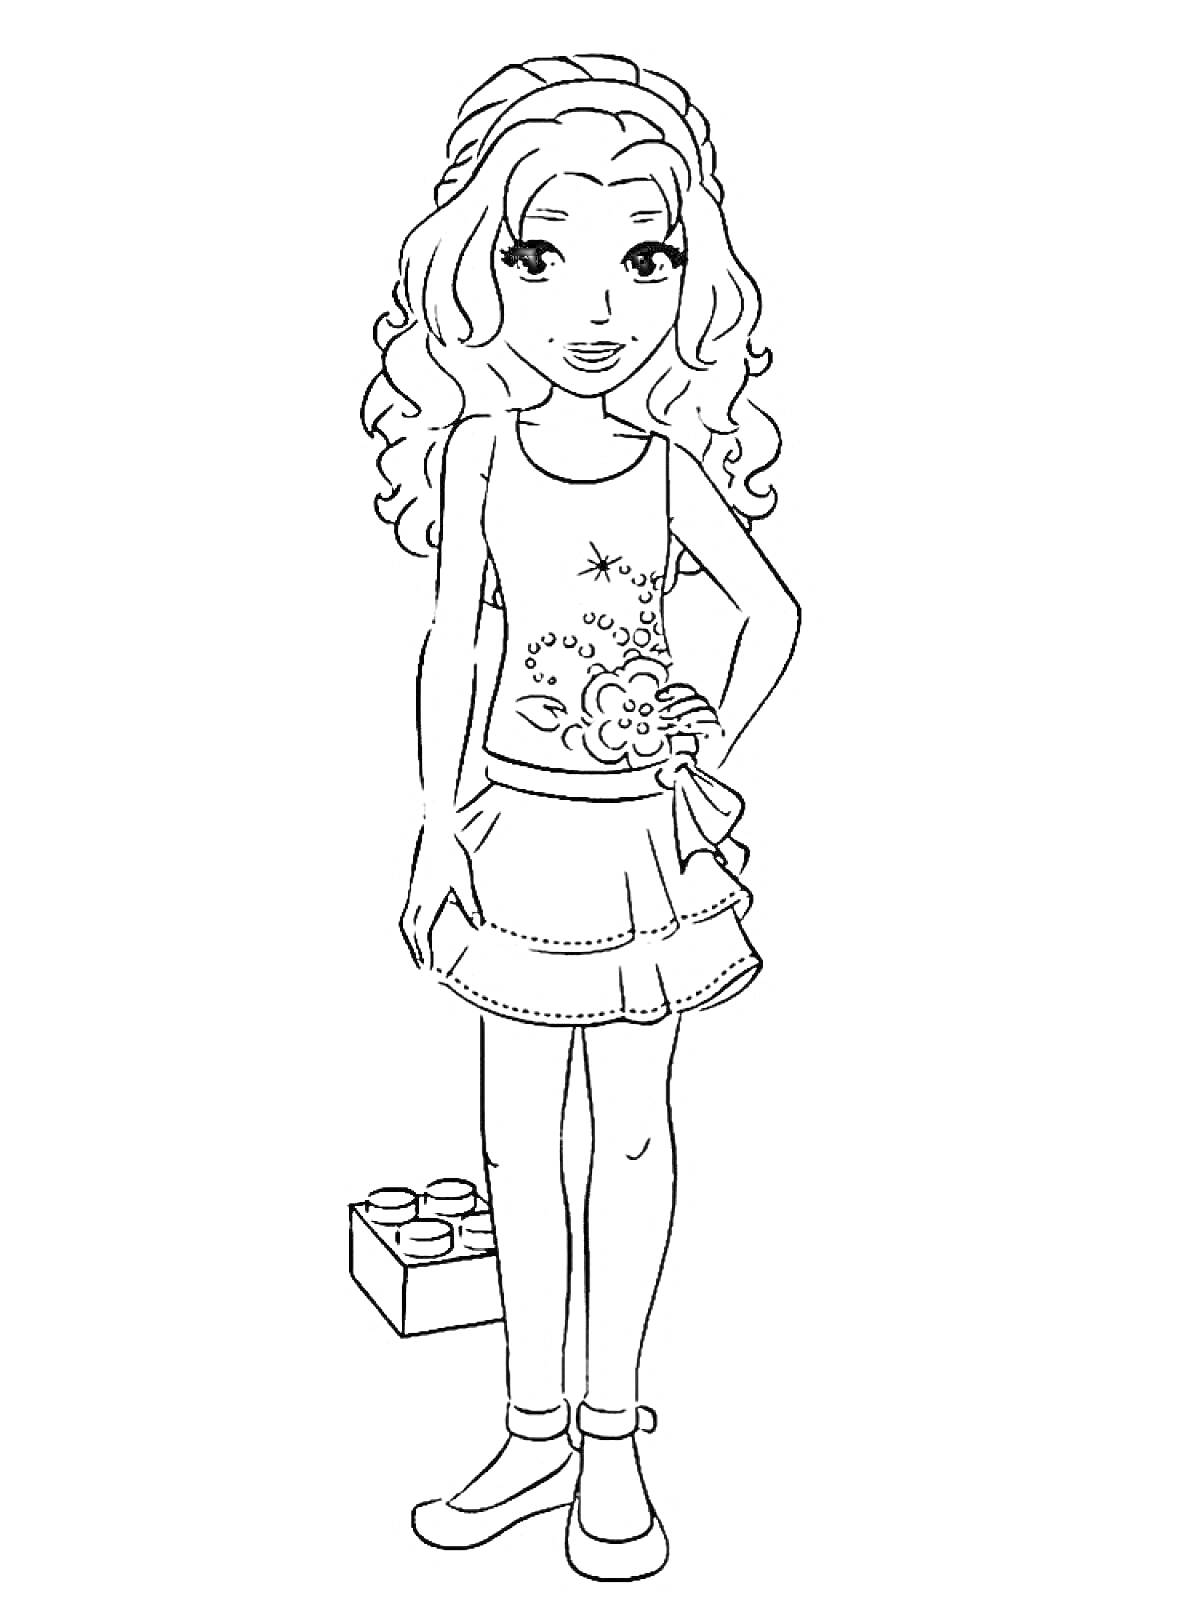 Раскраска Девочка с длинными волосами в юбке и топе, с блоком Лего